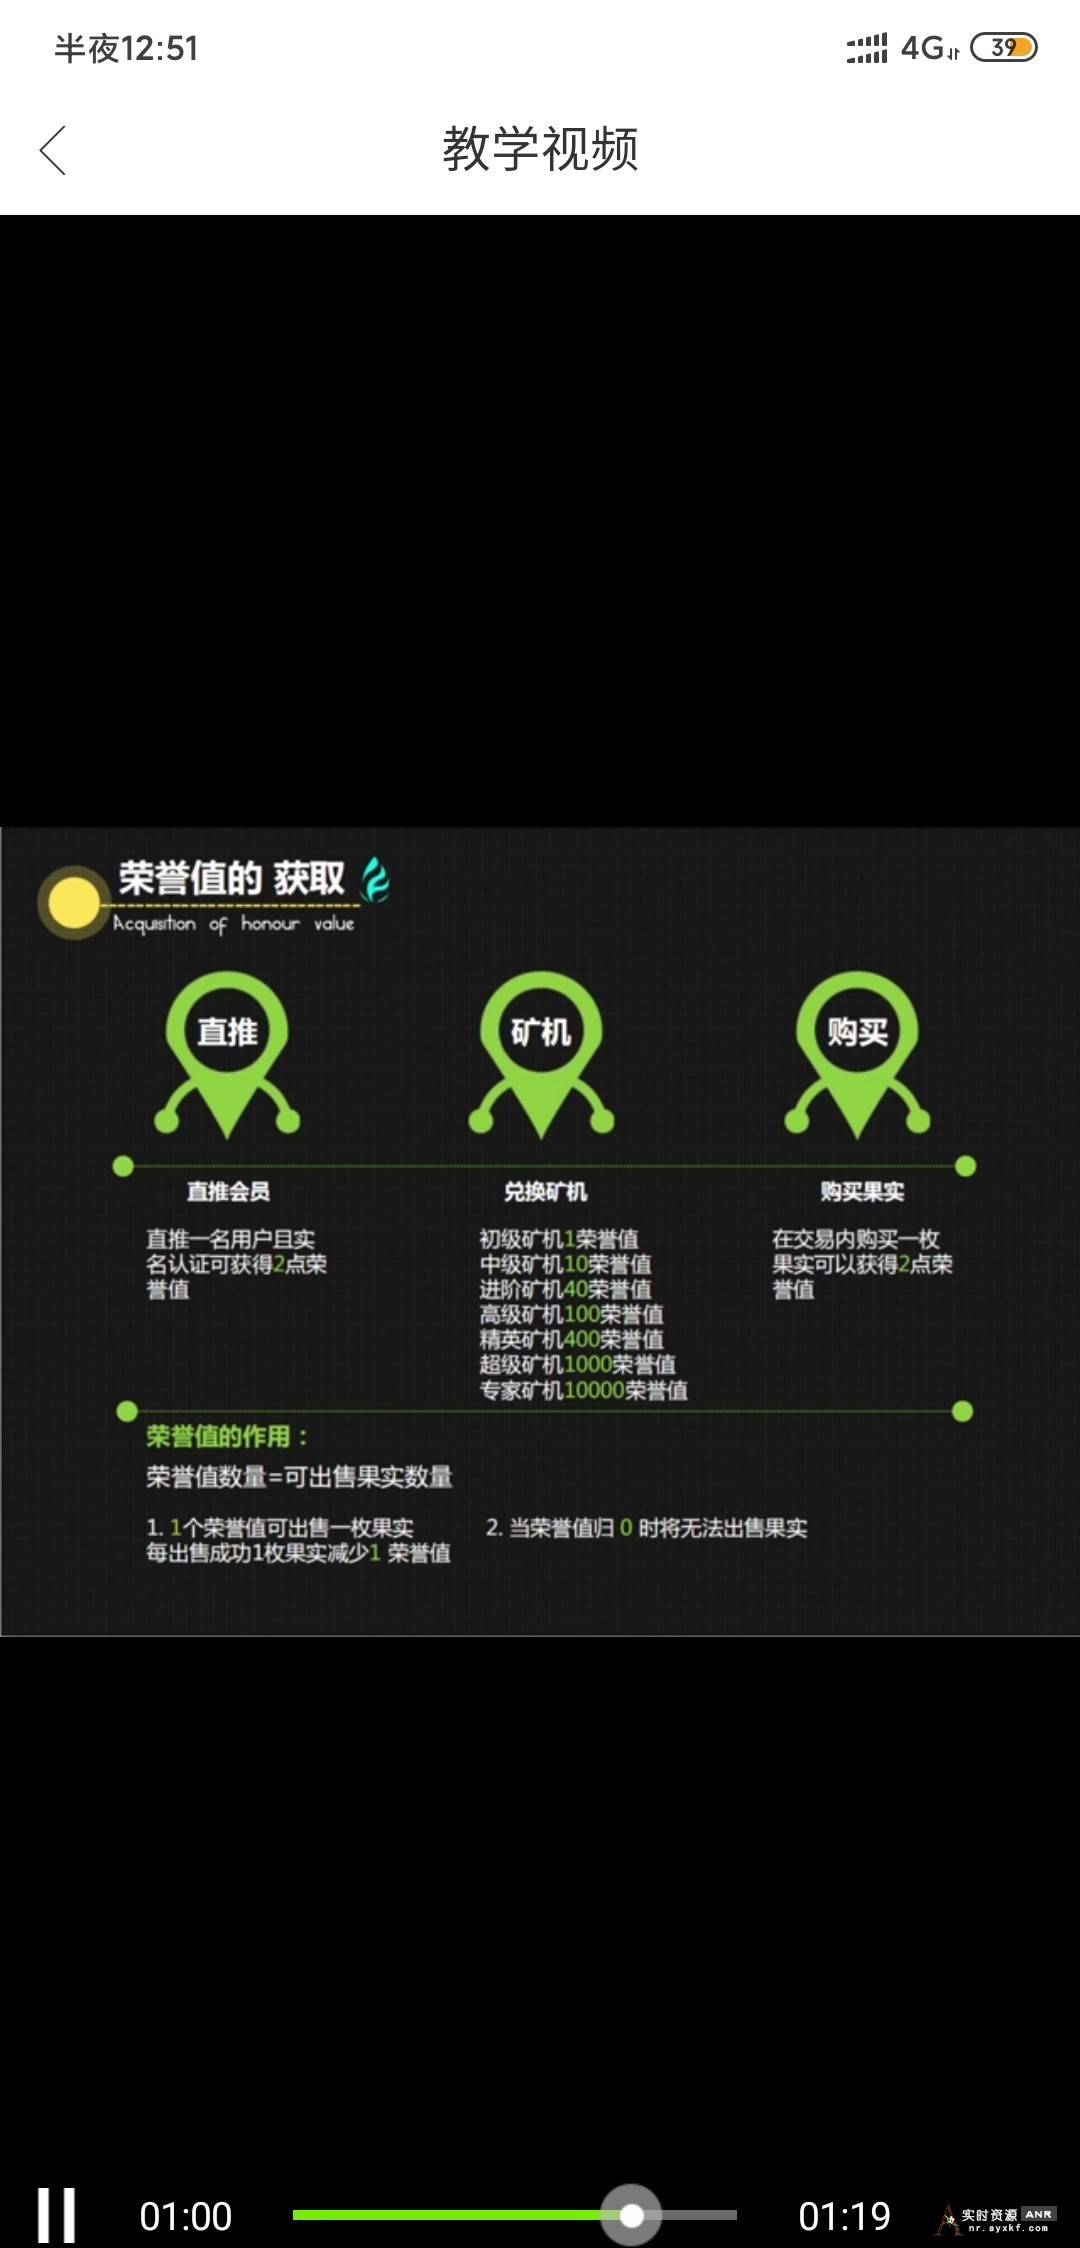 小富农app 注册送矿机一台 0撸100以上 网络资源 图1张